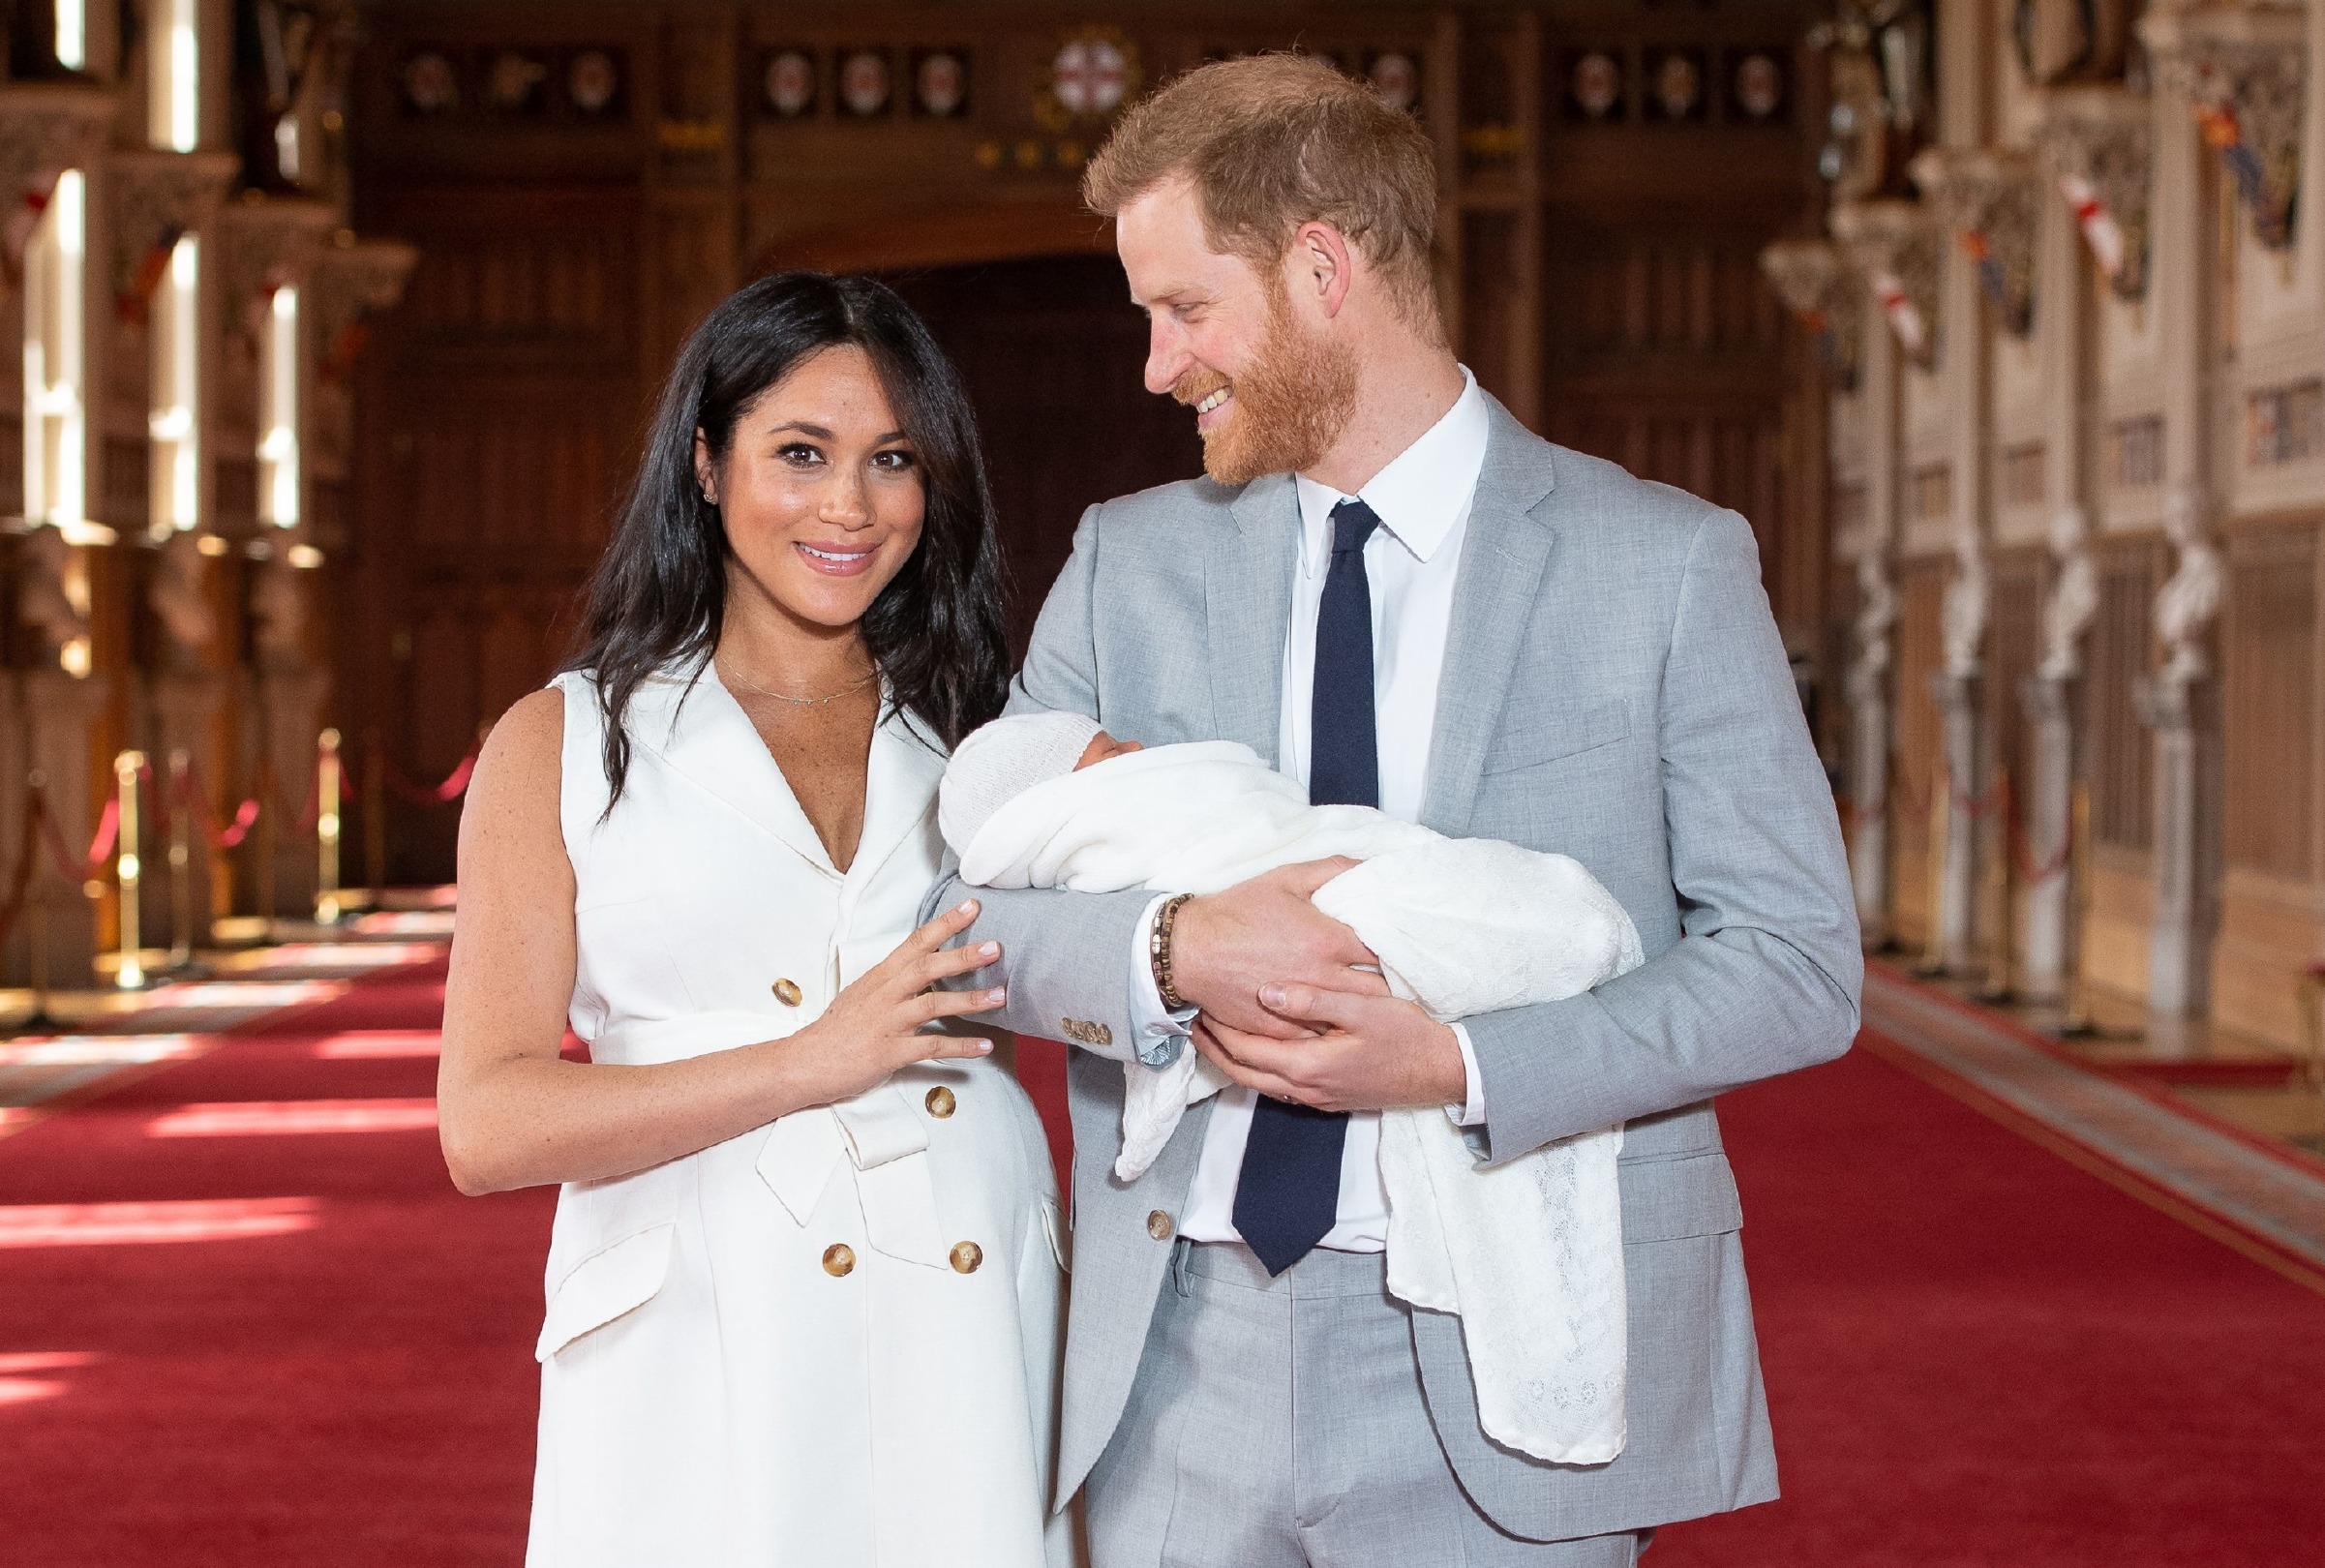 İşte Meghan Markle ve Prens Harry'nin Bebeklerinin İlk Fotoğrafı